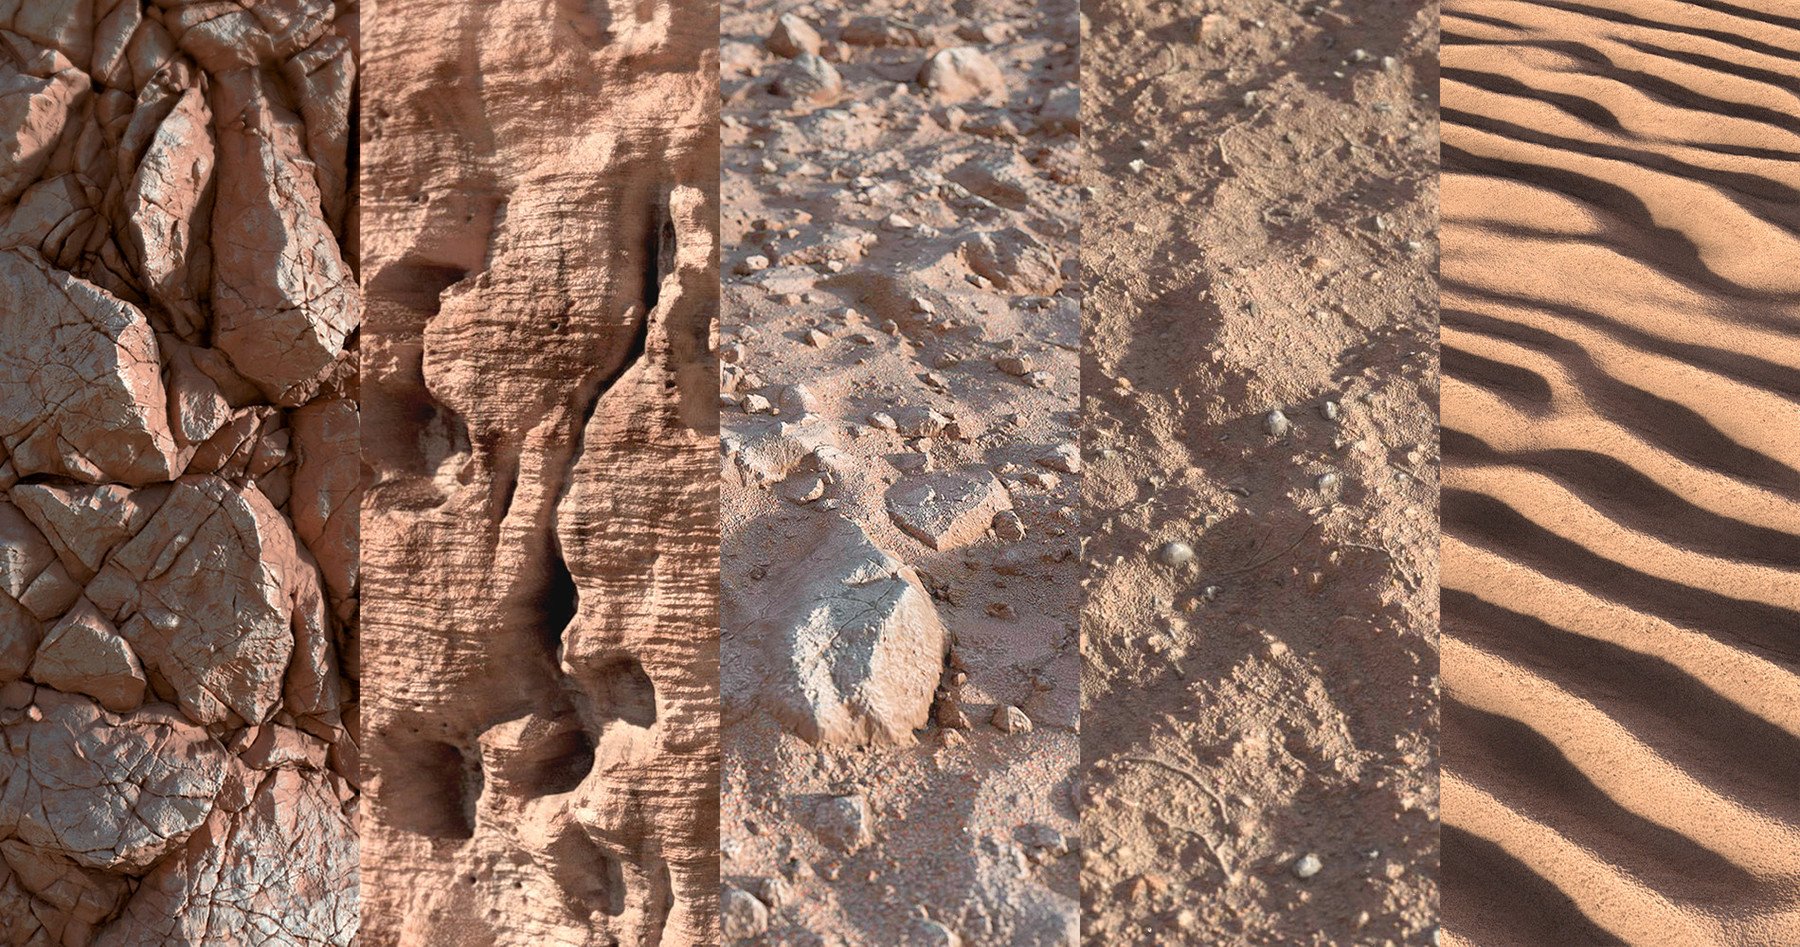 沙漠岩石相关主题4K高清纹理贴图合集Desert_Themed_Texture_Pack